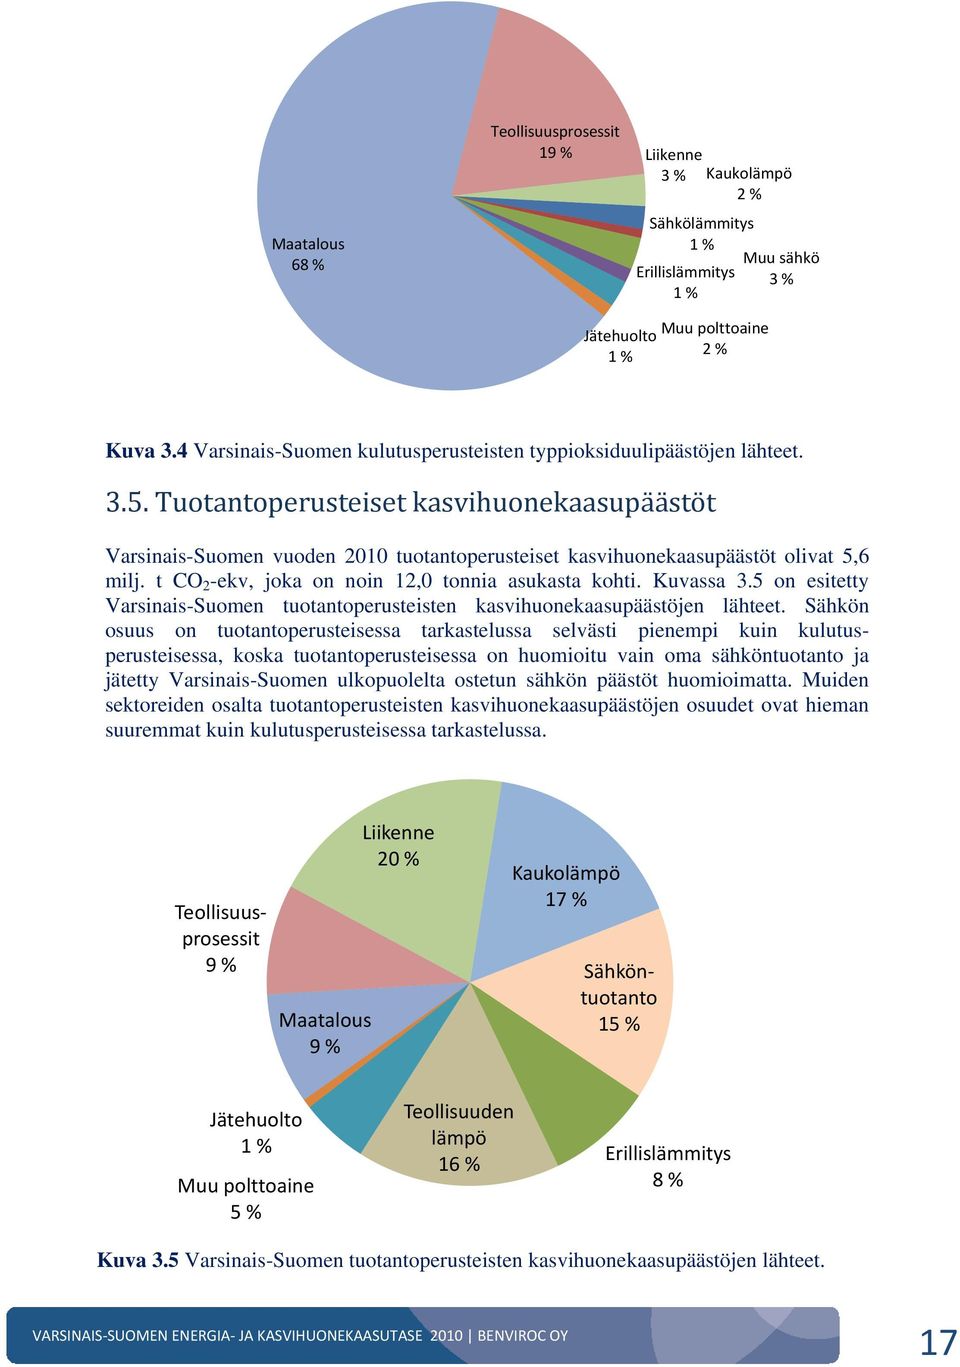 Tuotantoperusteiset kasvihuonekaasupäästöt Varsinais-Suomen vuoden 2010 tuotantoperusteiset kasvihuonekaasupäästöt olivat 5,6 milj. t CO 2 -ekv, joka on noin 12,0 tonnia asukasta kohti. Kuvassa 3.